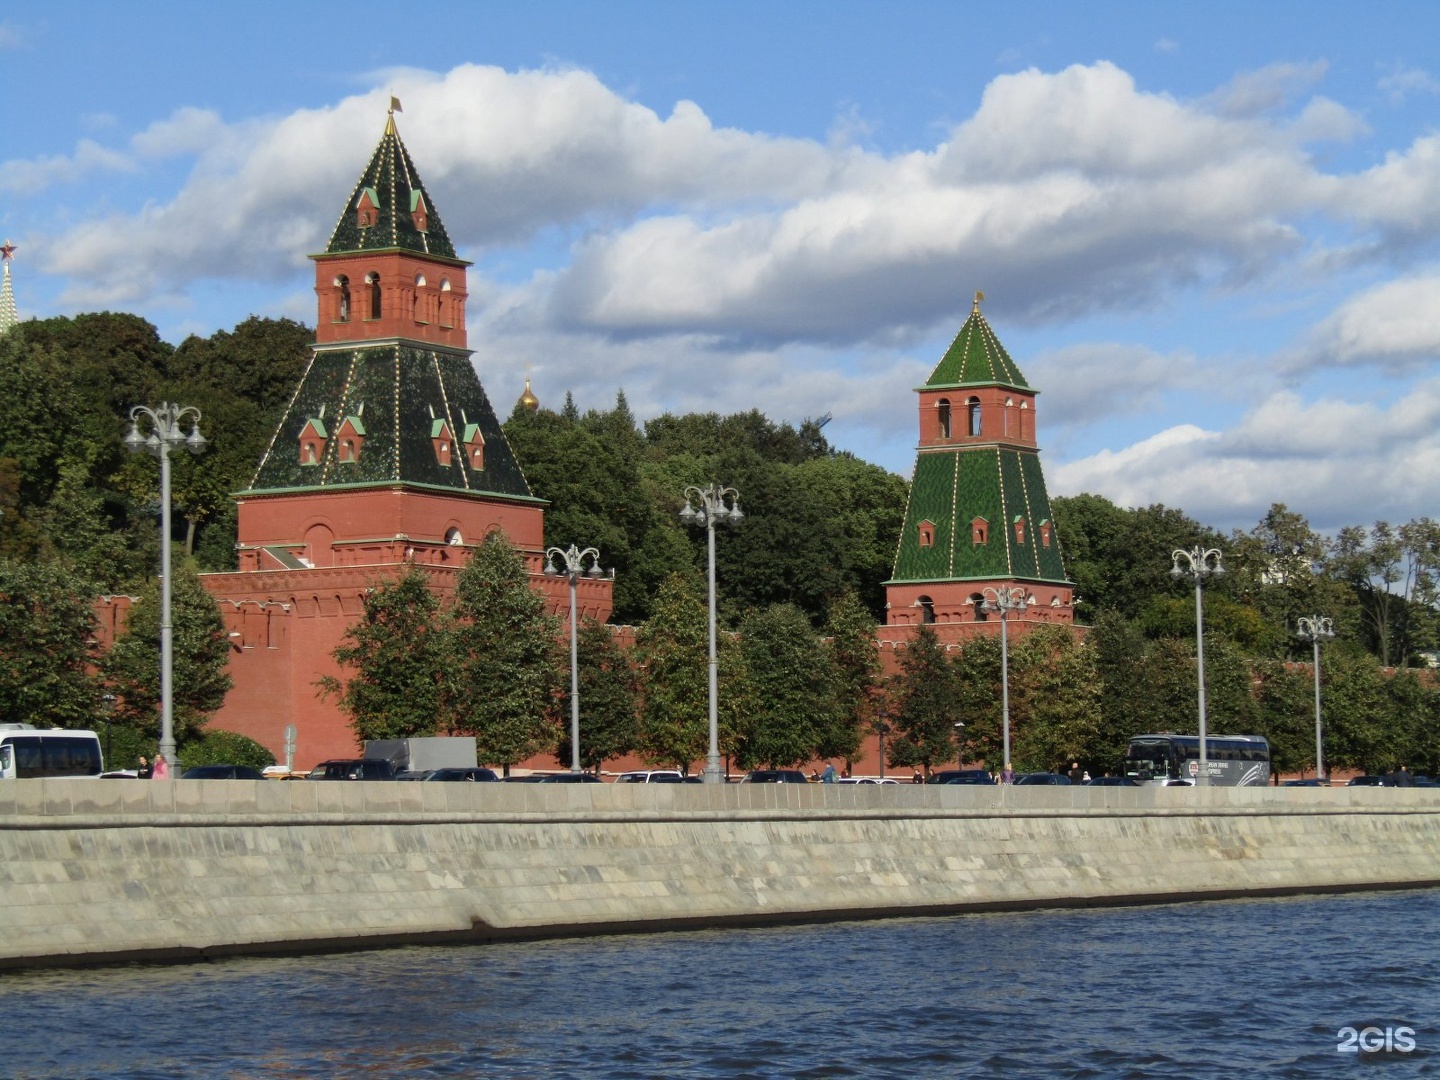 Тайницкая башня московского кремля